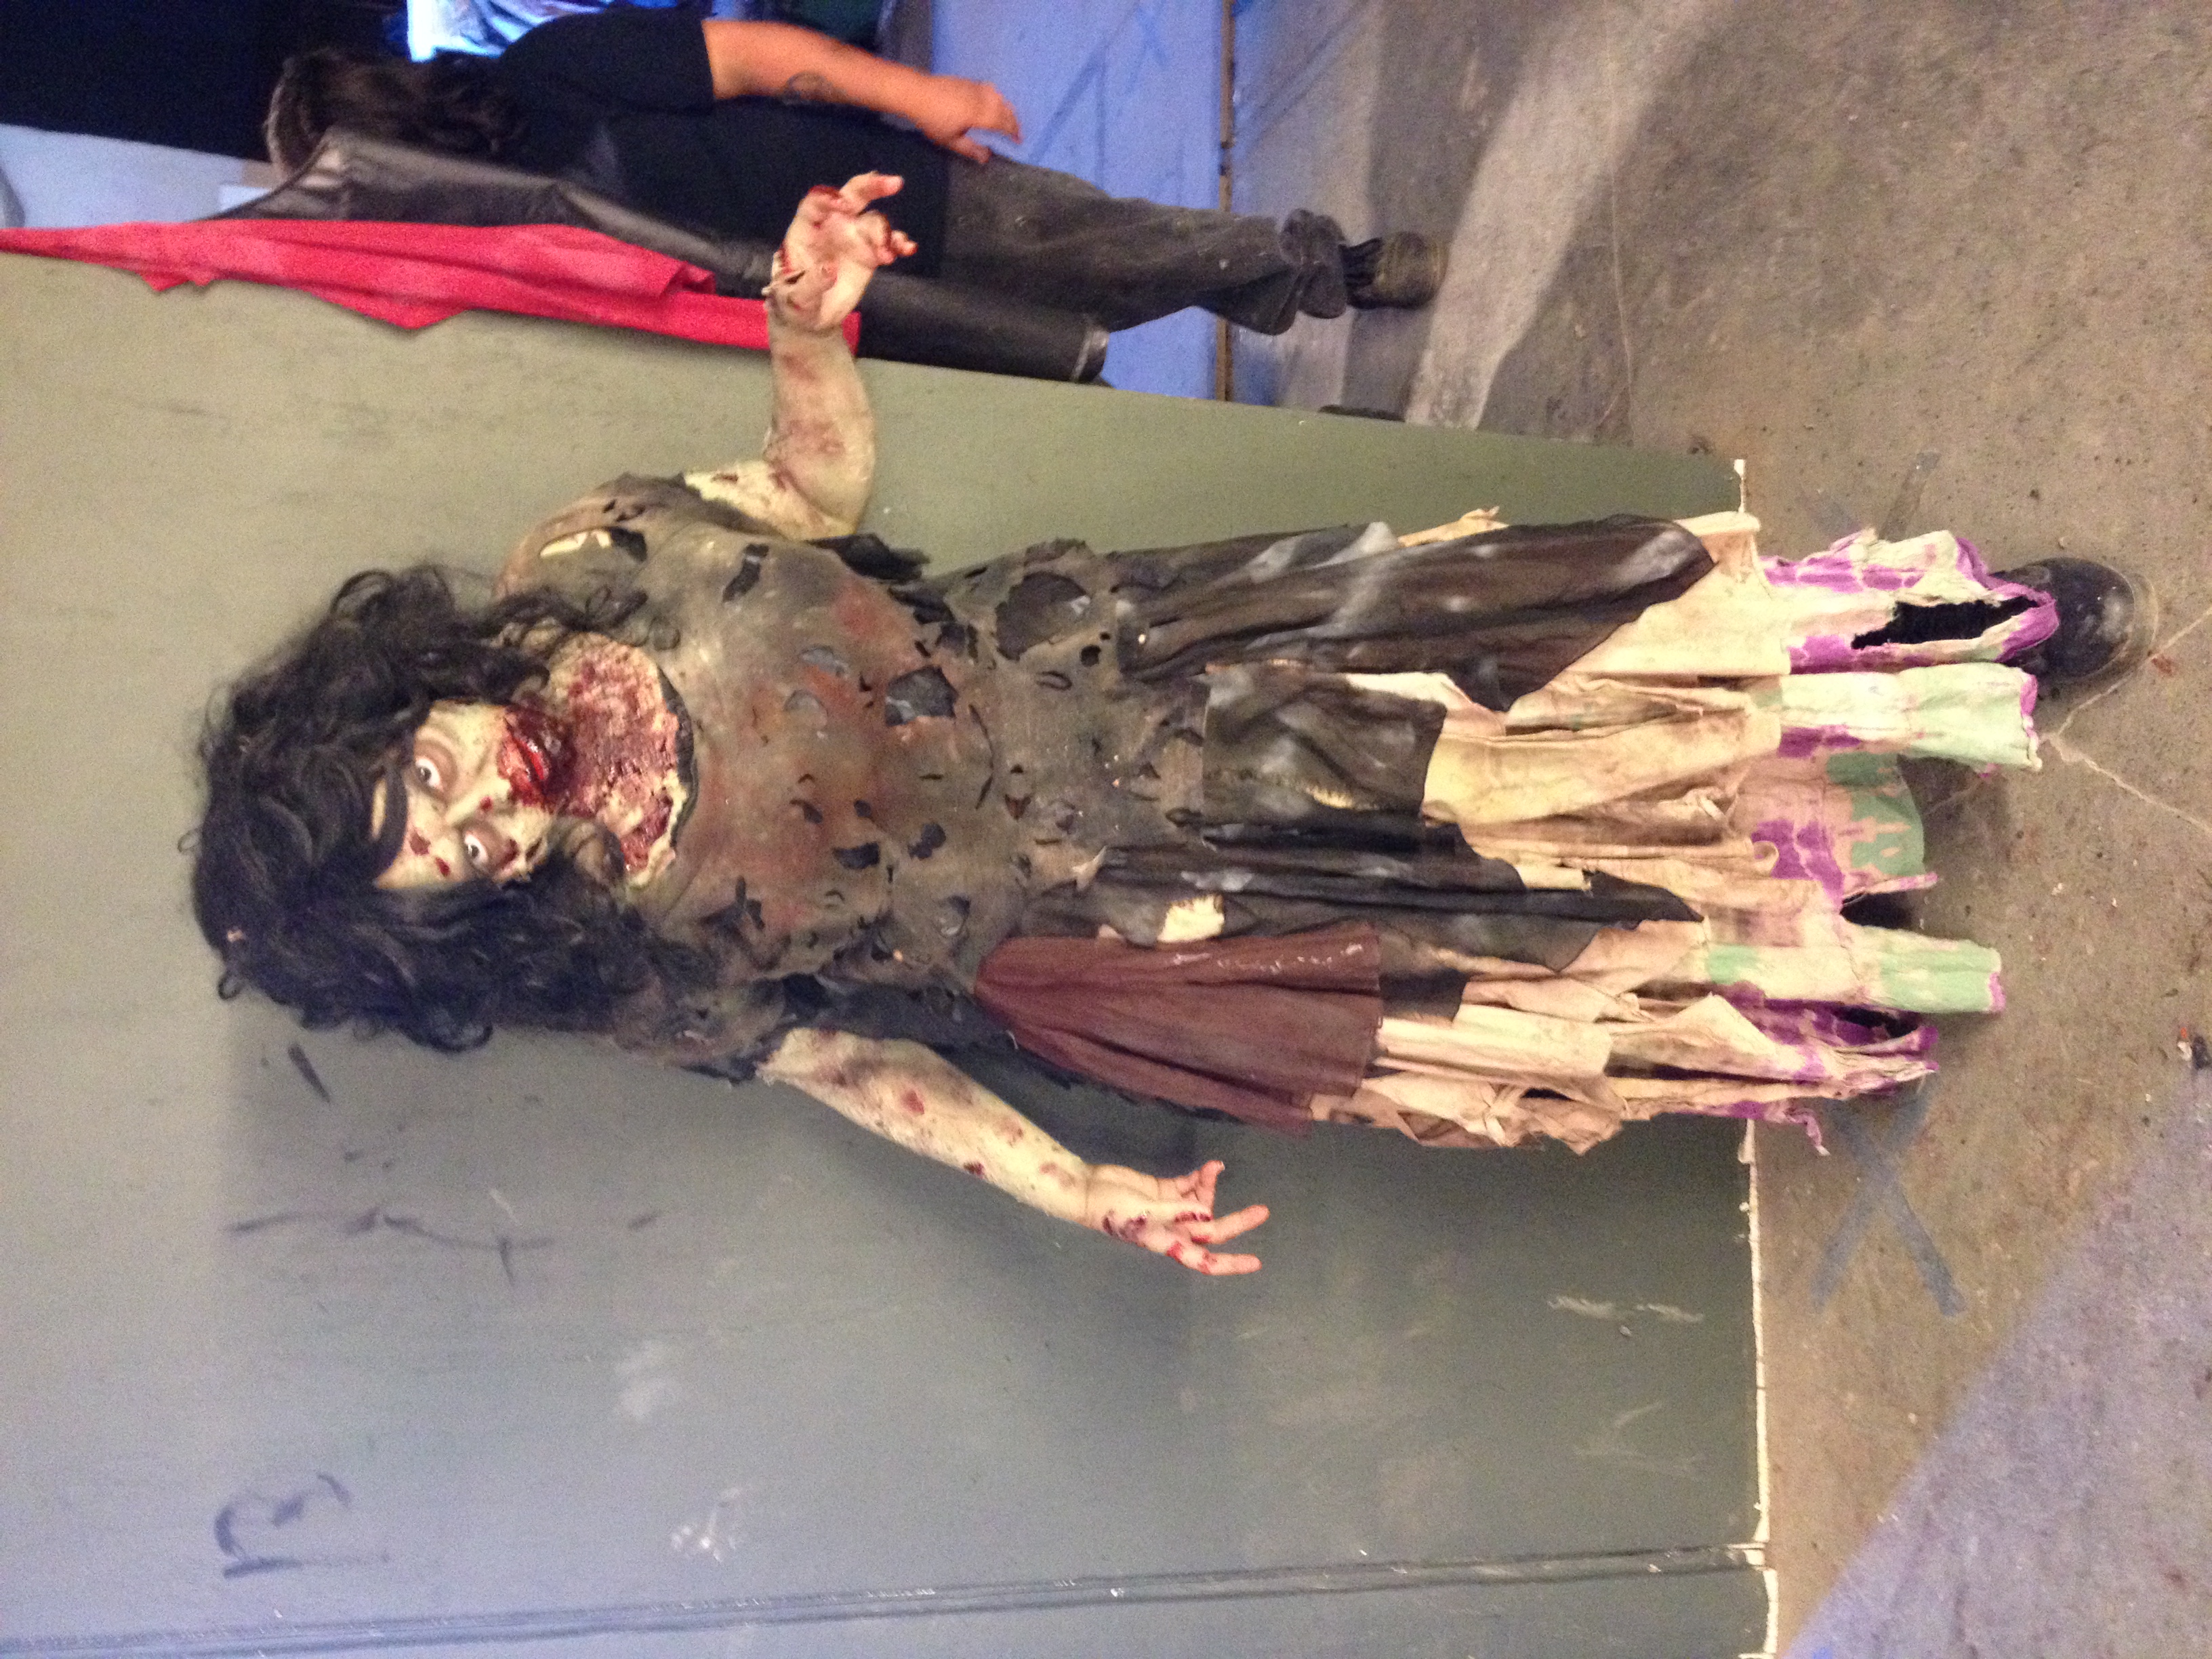 Zombie for the Dia de los Muertos Conference in San Antonio, Texas (Nov. 1, 2013).